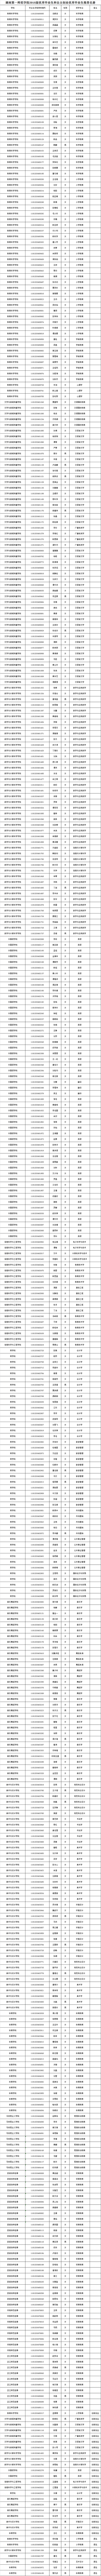 180313湖南第一师范学院2018届优秀毕业生推荐名册（449人）.png